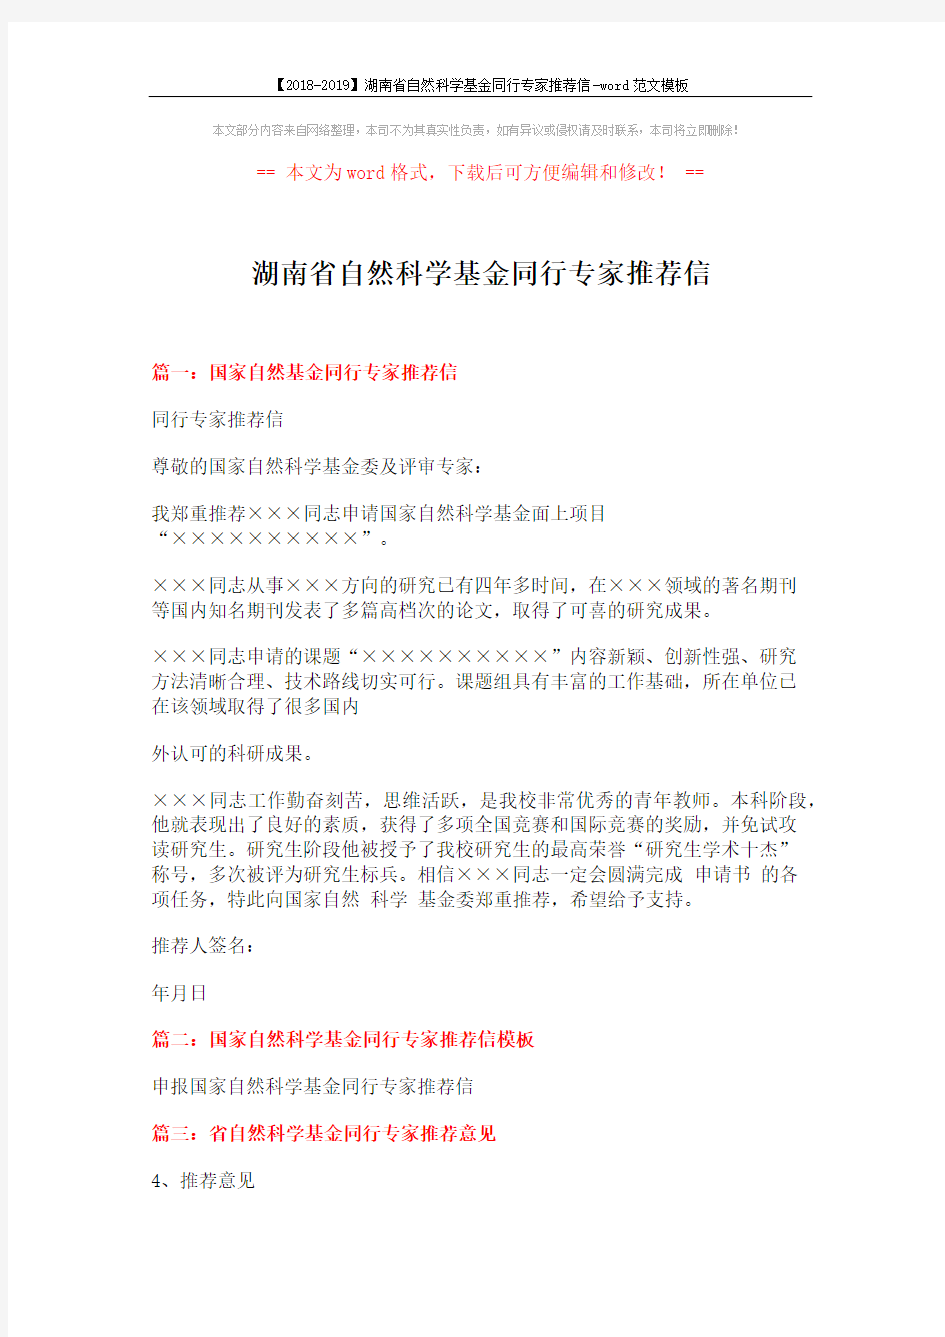 【2018-2019】湖南省自然科学基金同行专家推荐信-word范文模板 (2页)